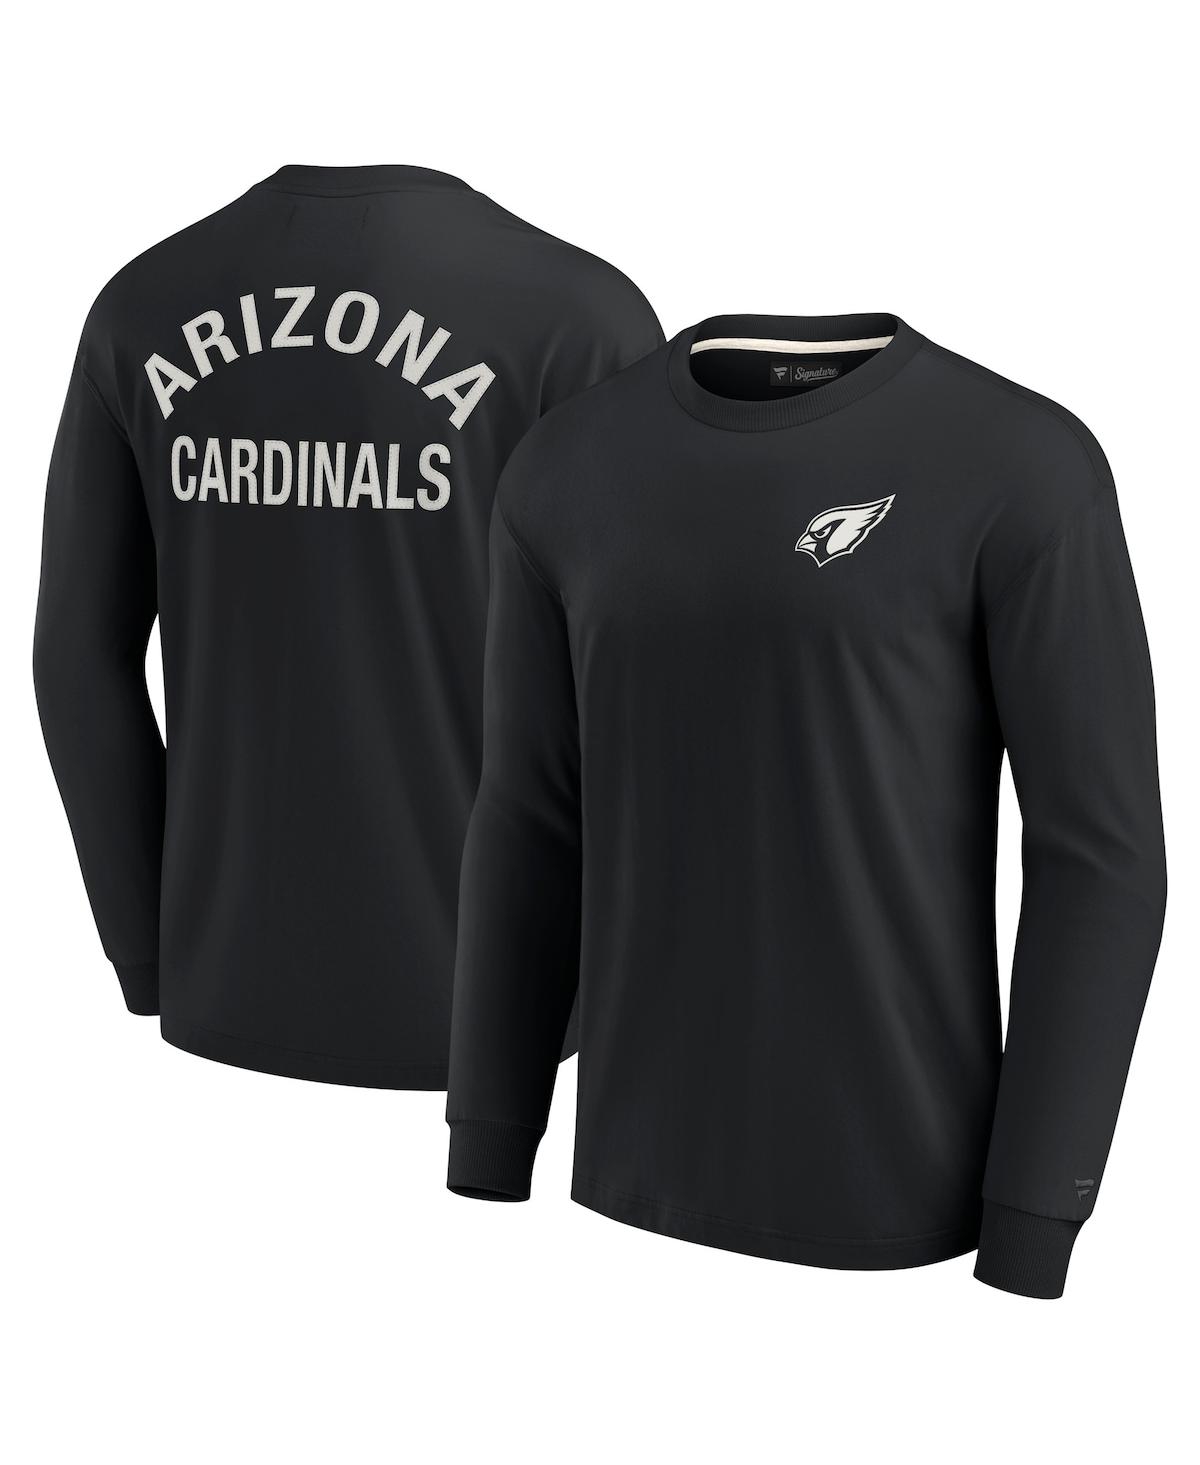 Shop Fanatics Signature Men's And Women's  Black Arizona Cardinals Super Soft Long Sleeve T-shirt